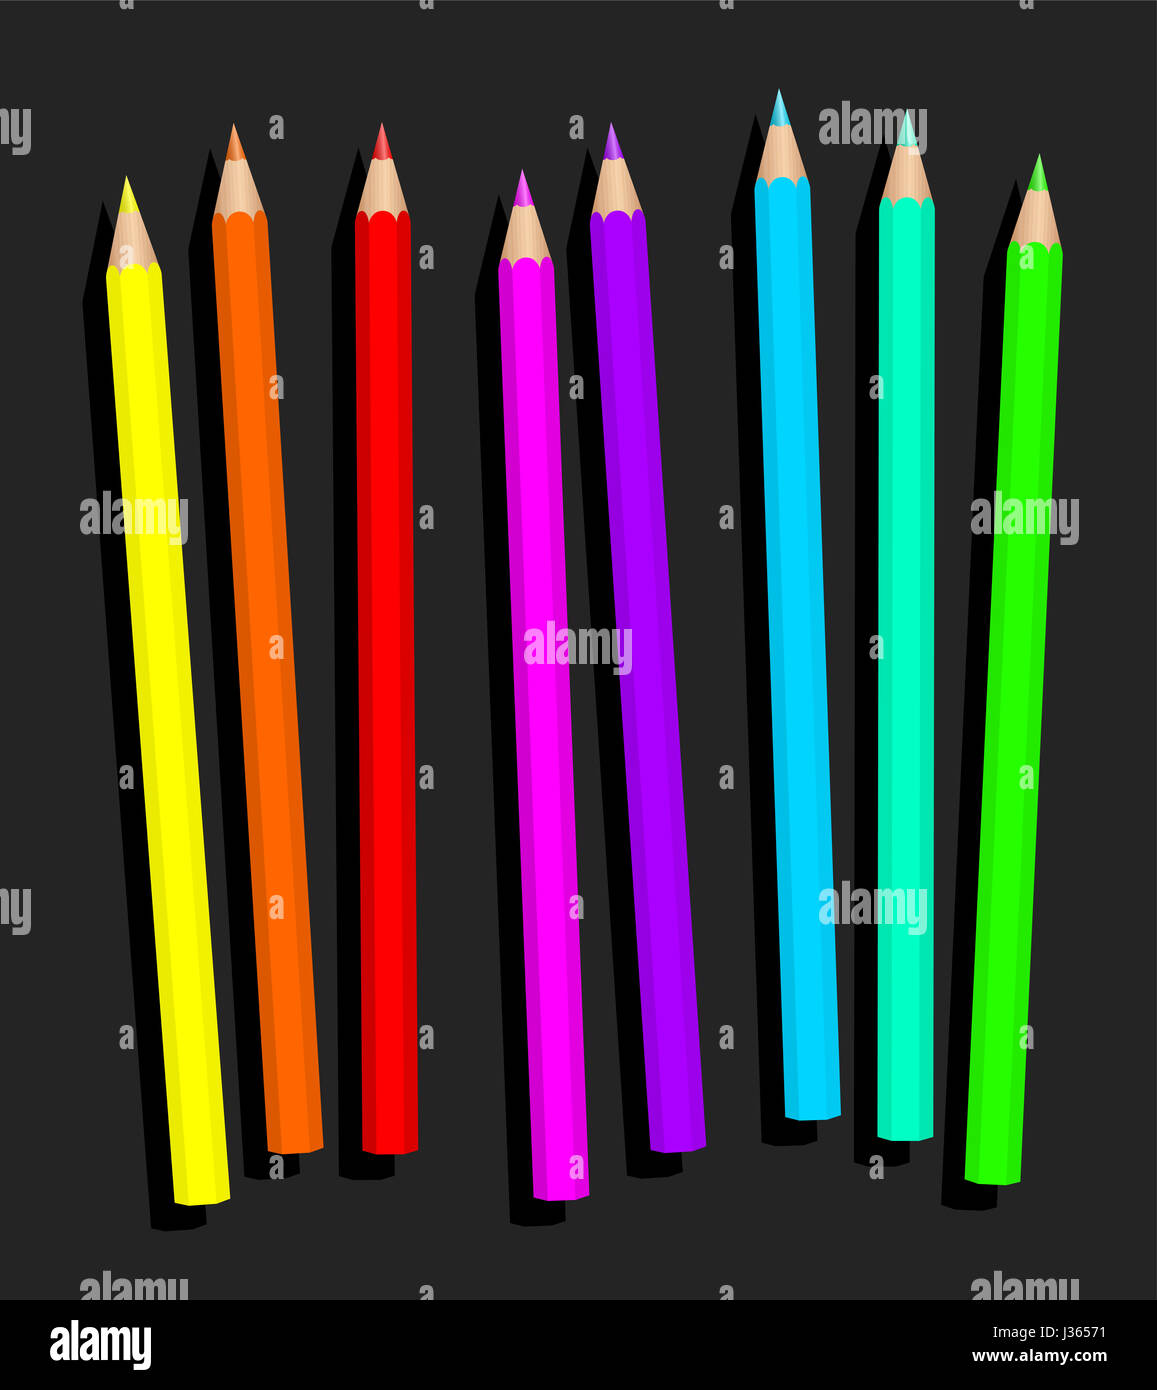  Lápices de colores de dibujo, colores ricos altamente